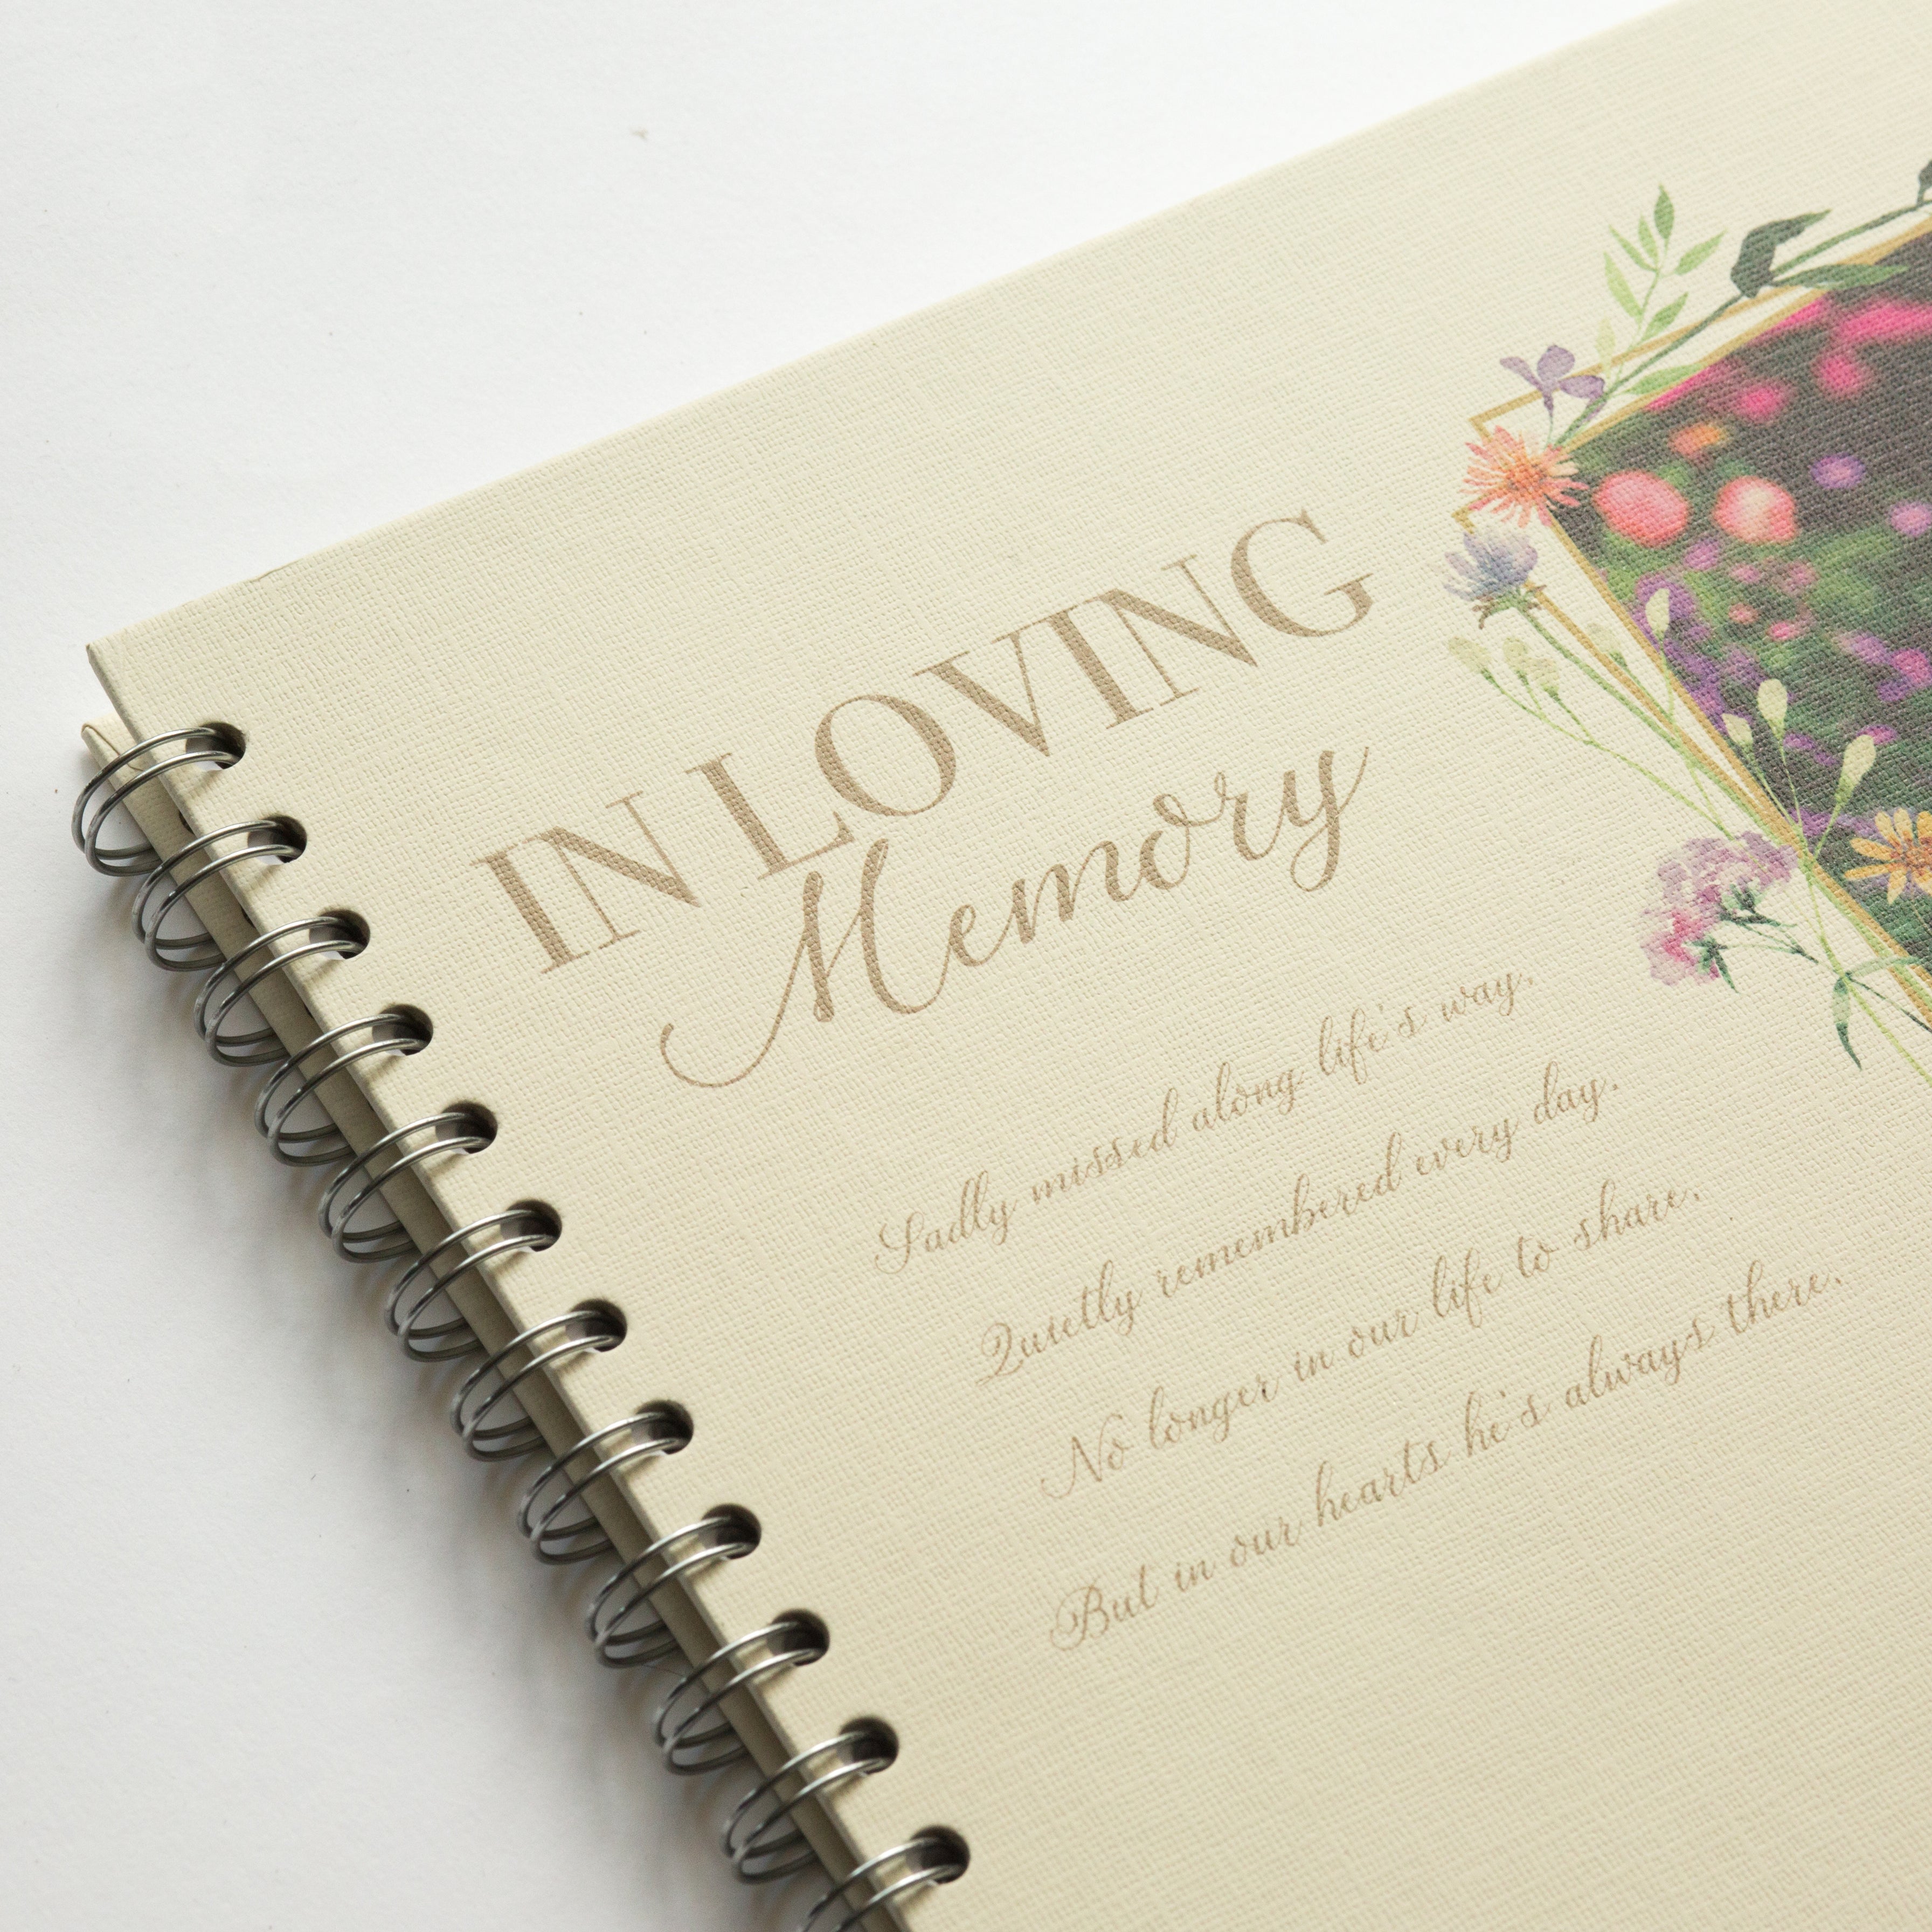 In Loving Memory Photo Memories Book